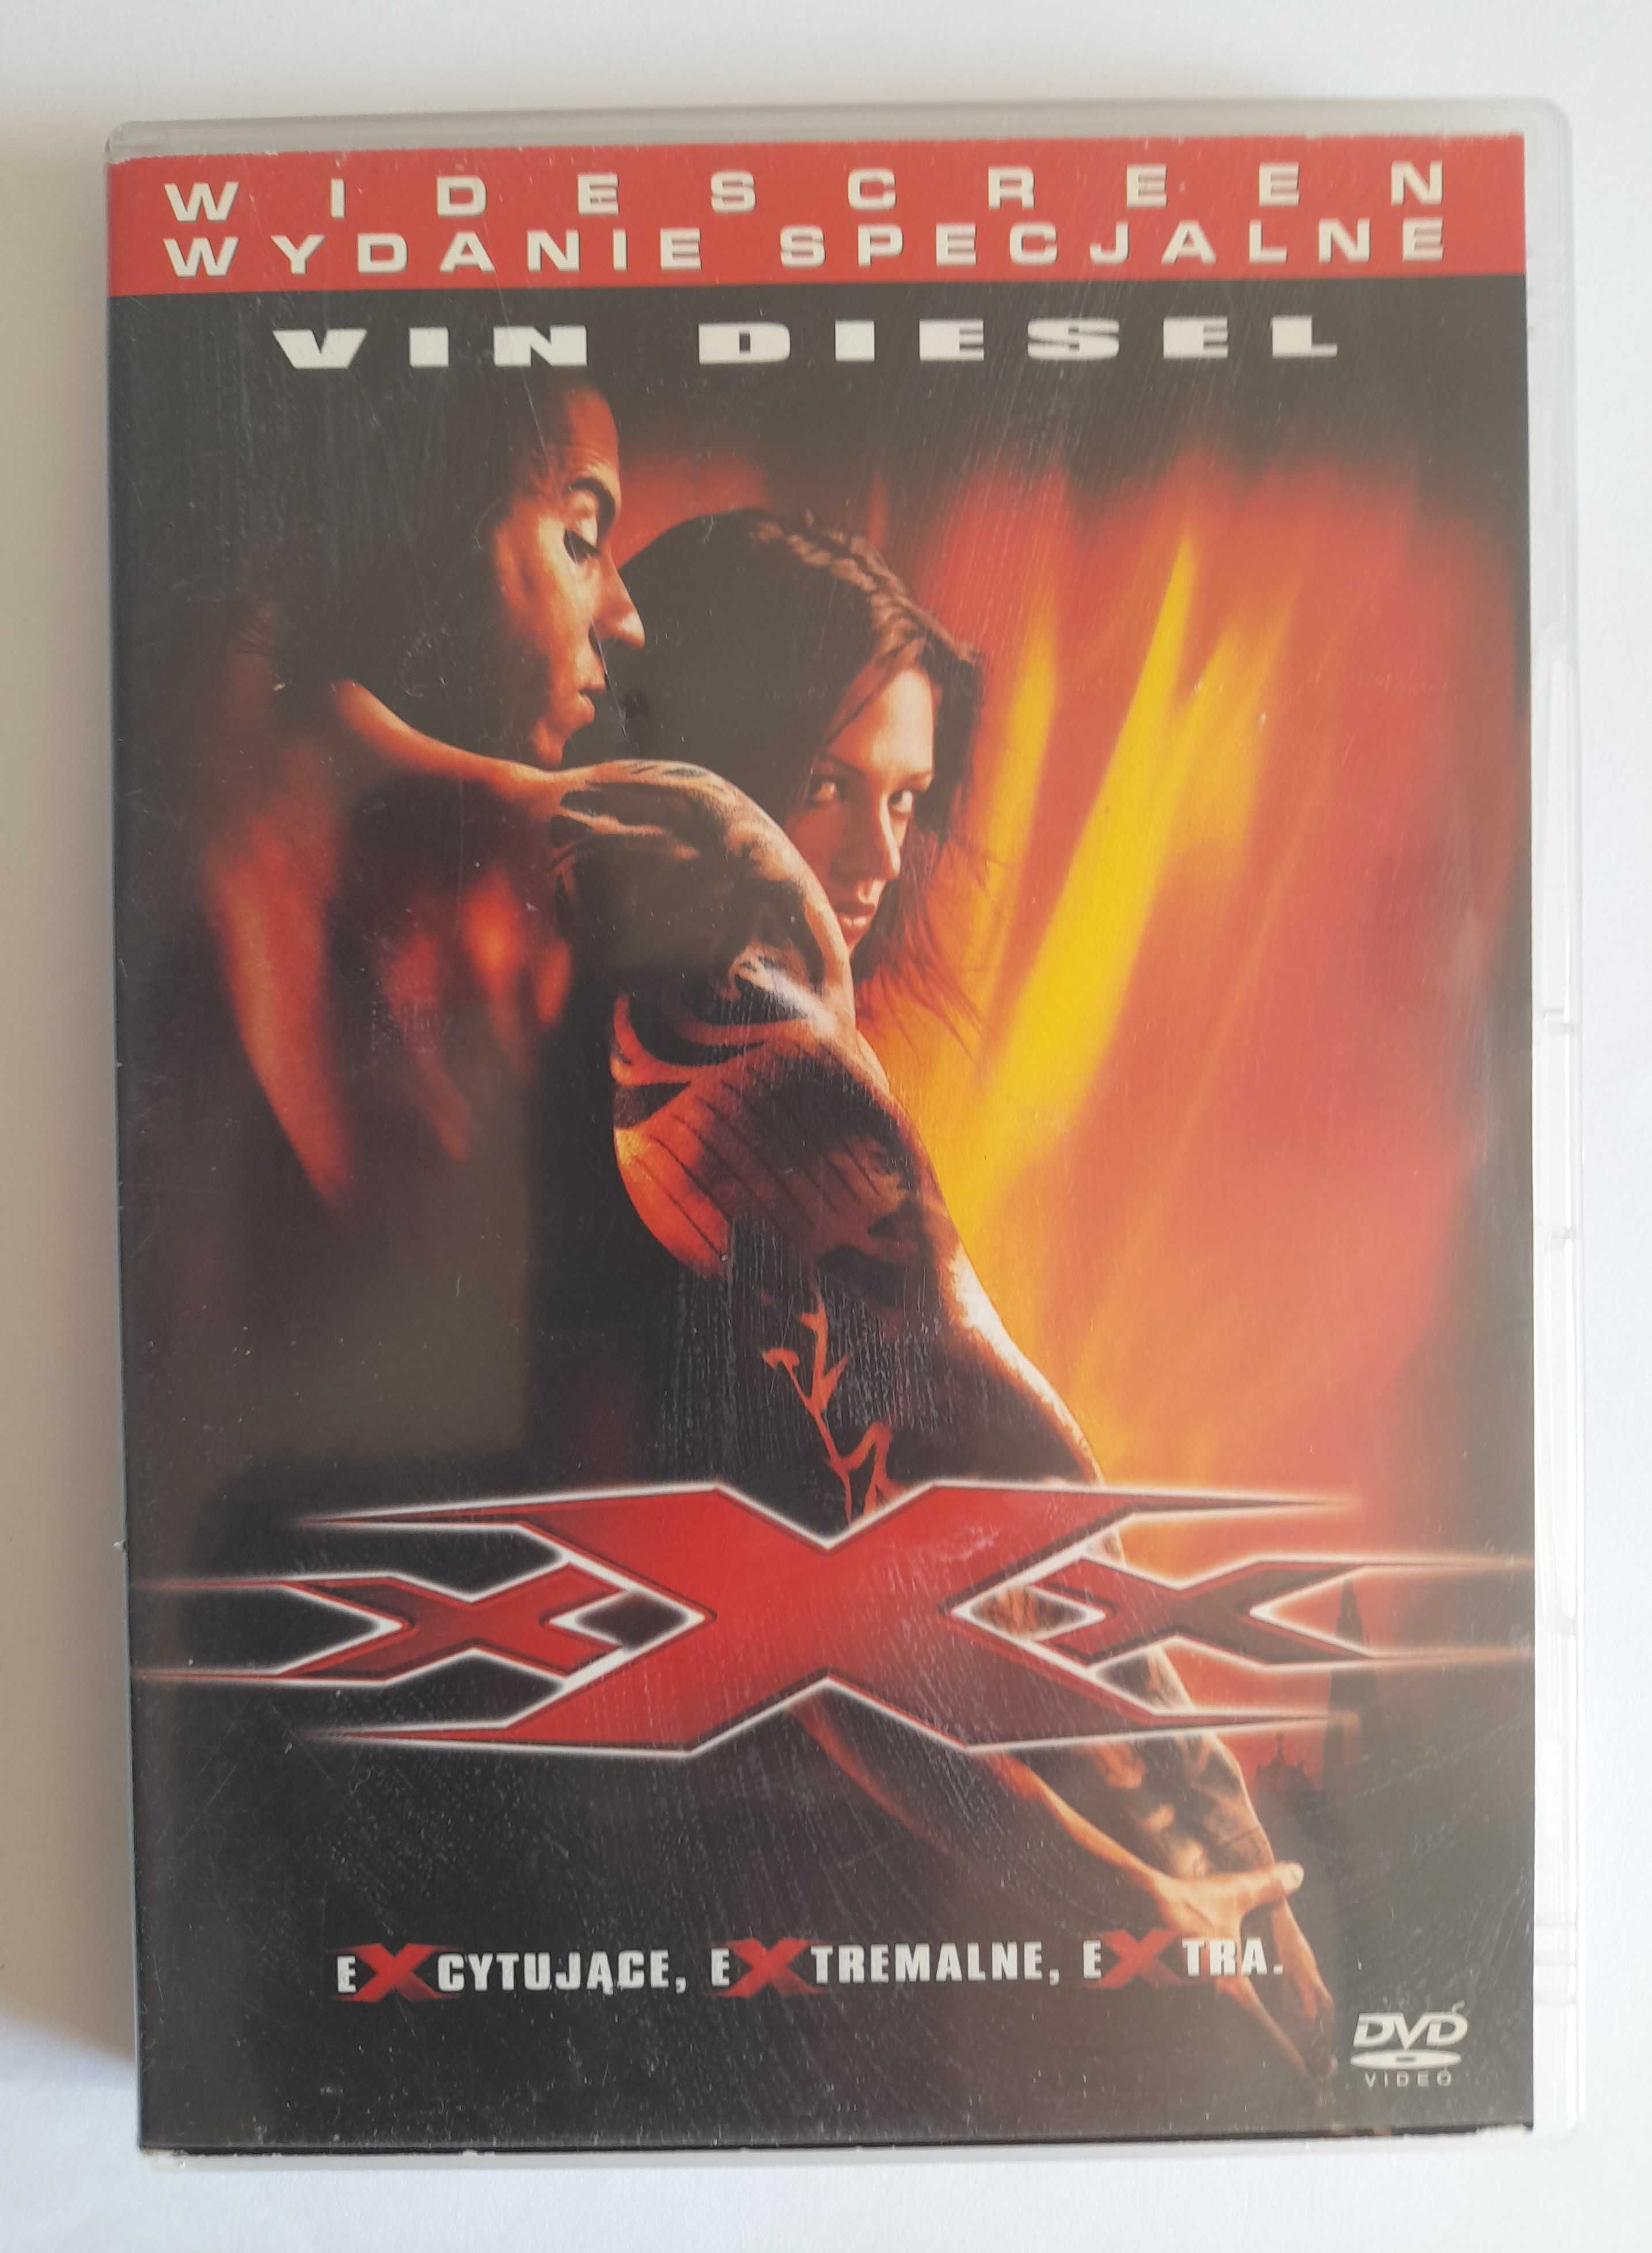 XXX. Wydanie specjalne płyta DVD